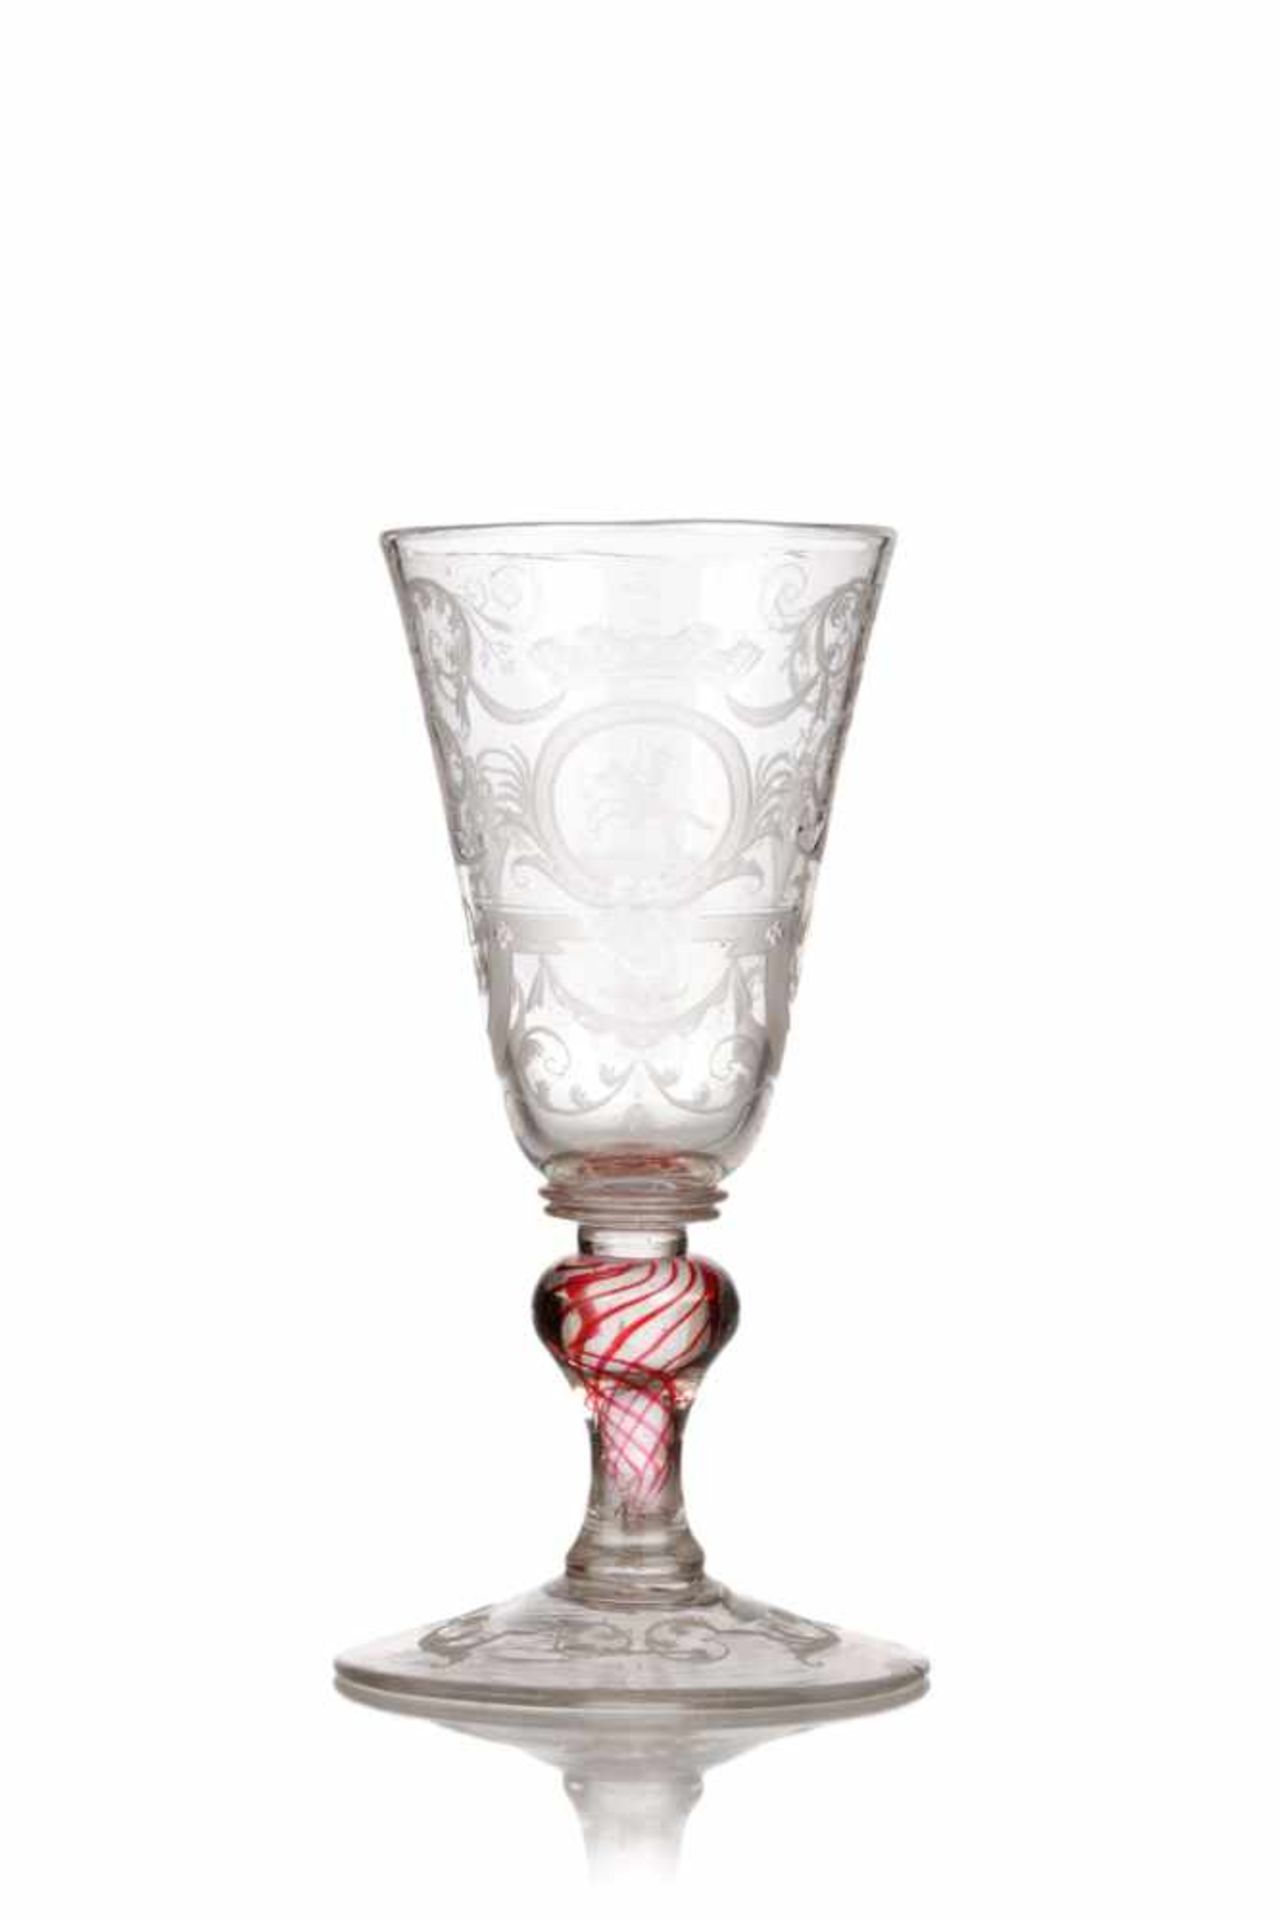 Pokalglas mit Reiterdekor. Böhmen. 18. Jh.Farbloses, schlieriges und leicht blasiges Glas, teils mit